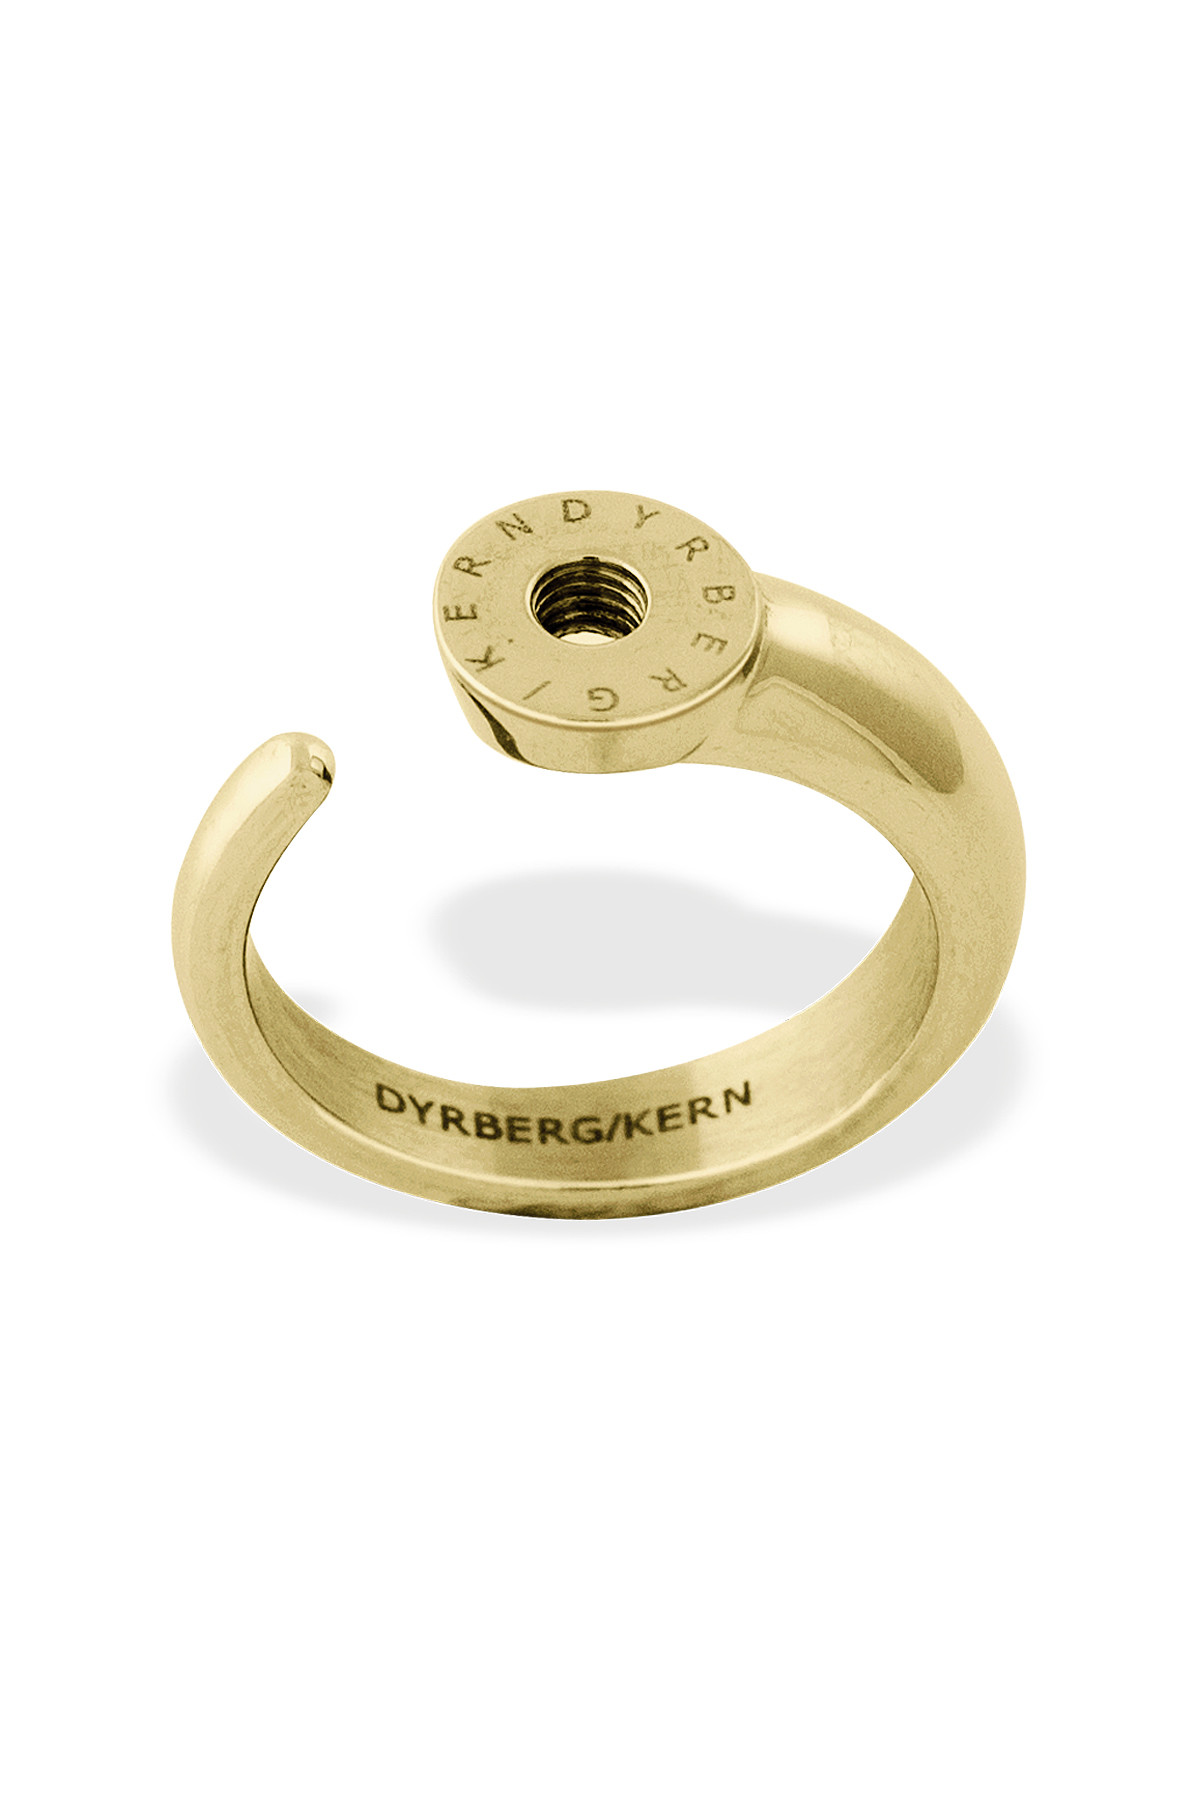 Billede af Dyrberg/kern Ring Ring, Farve: Guld, Størrelse: II/54, Dame